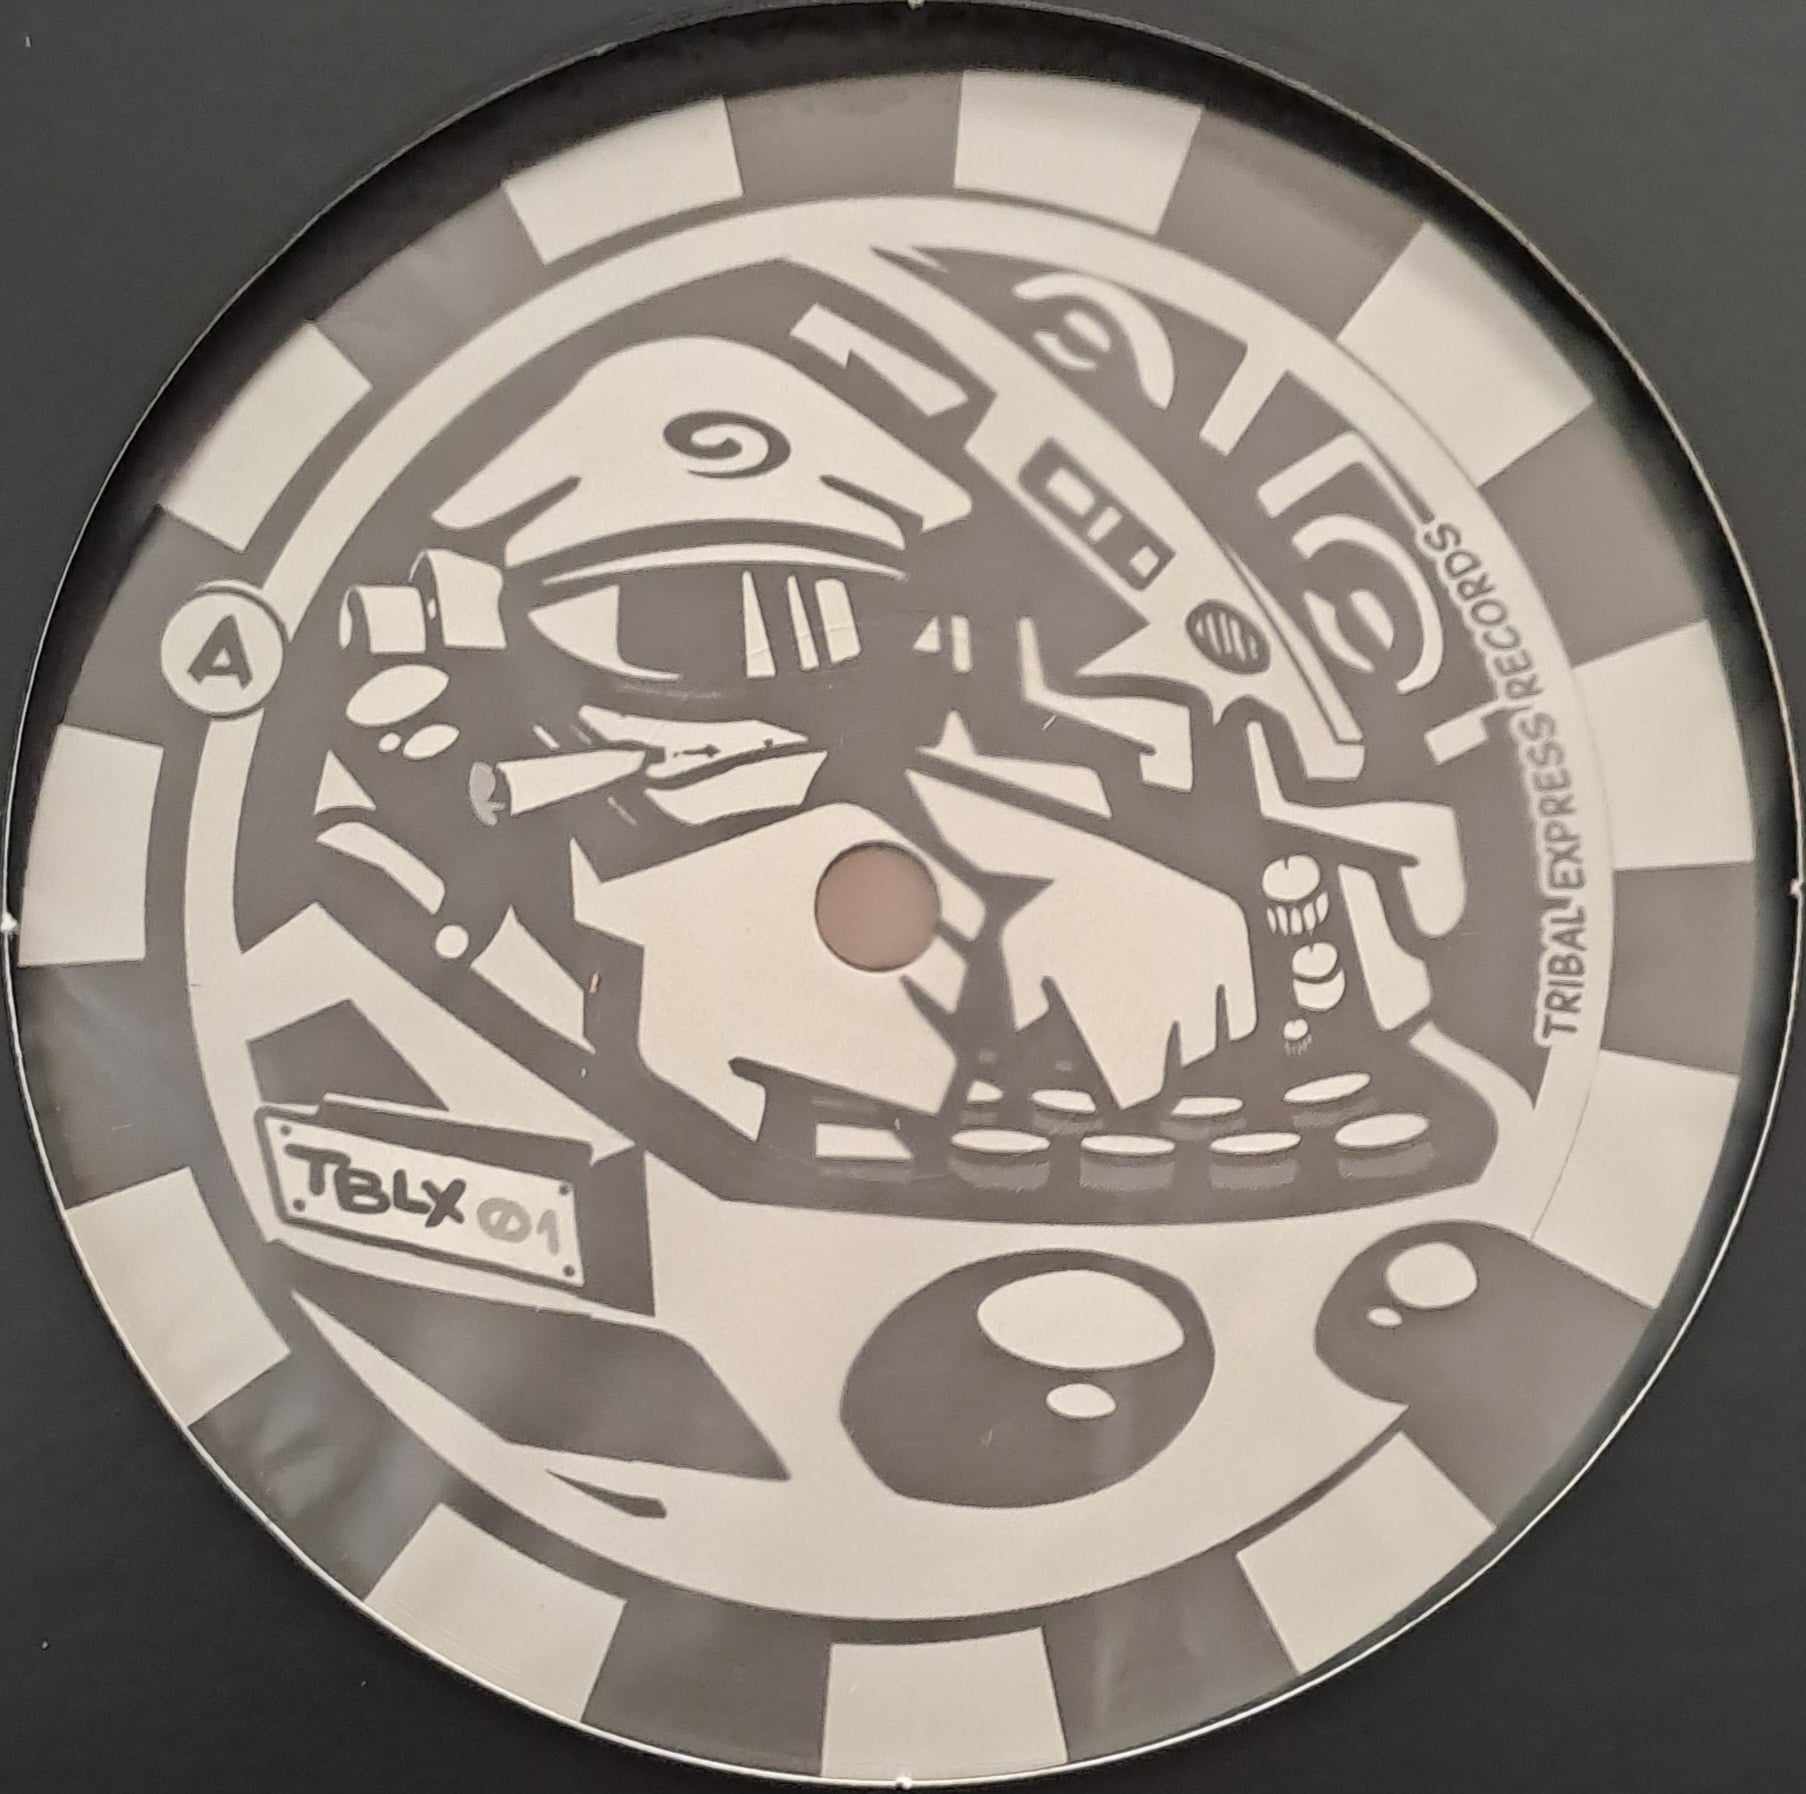 Tribal Express 01 (toute dernière copie en stock) - vinyle freetekno